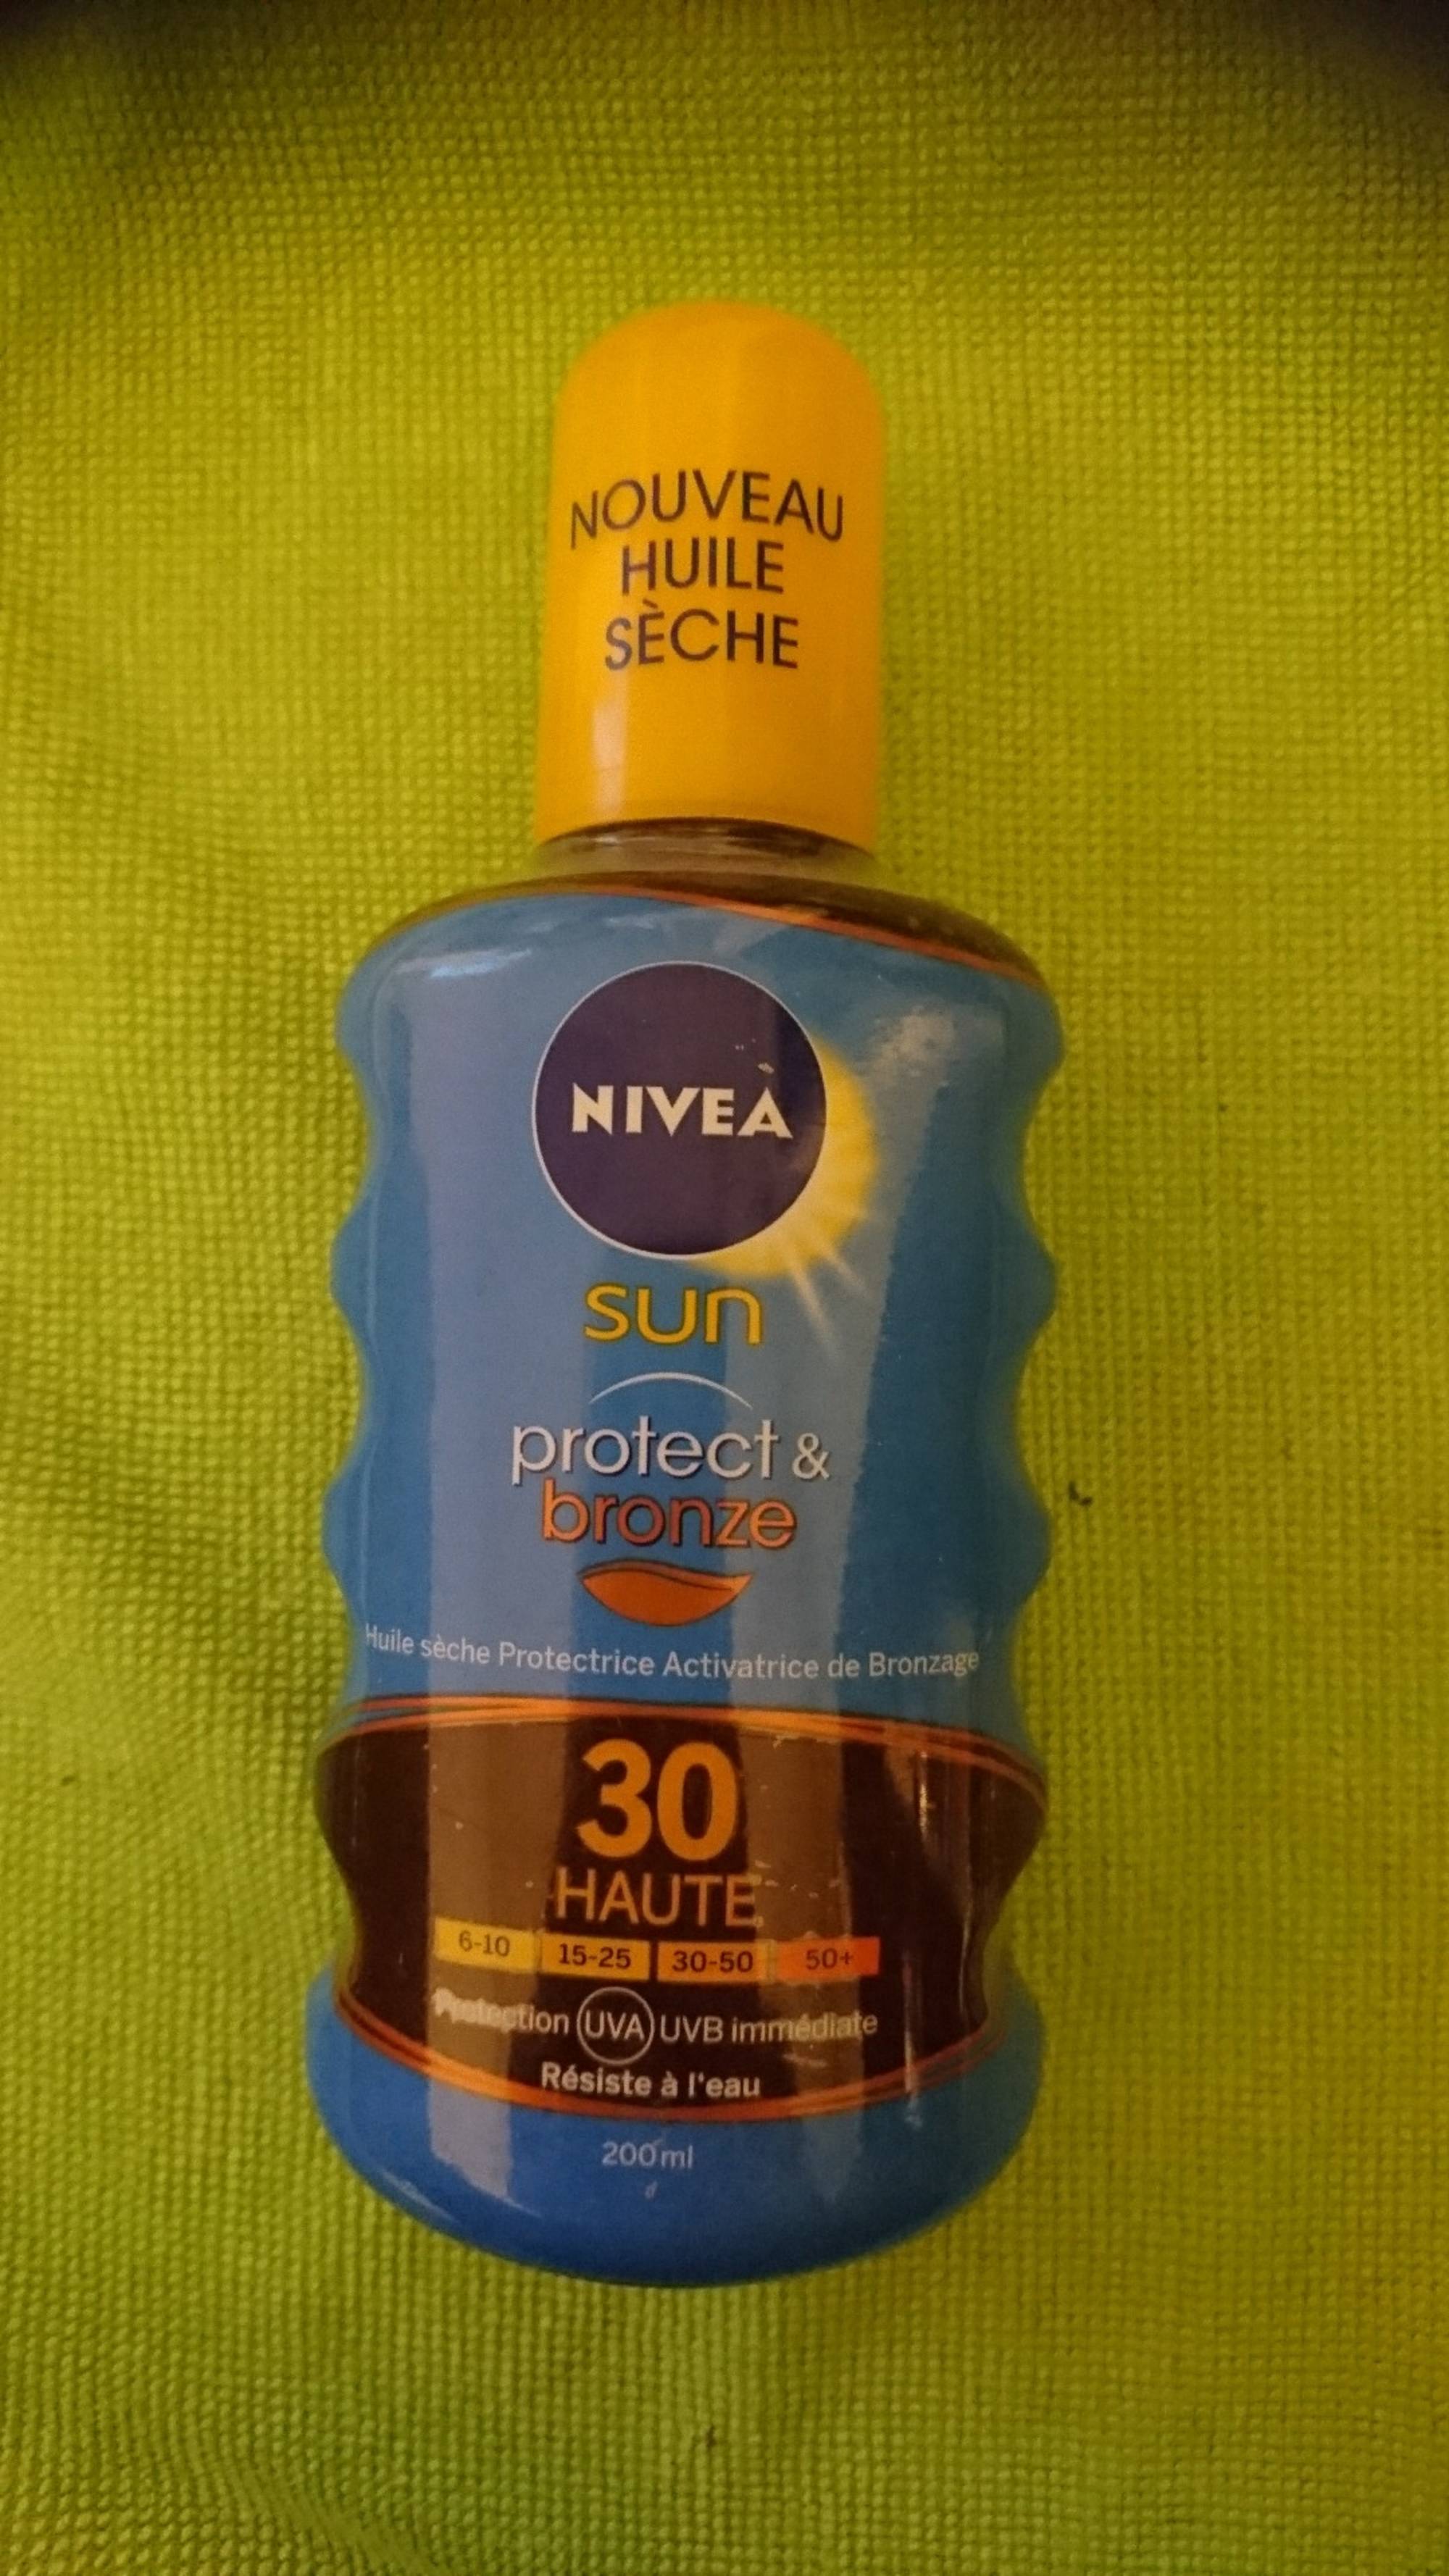 NIVEA - Sun protect & bronze - Huile sèche protectrice SPF 30